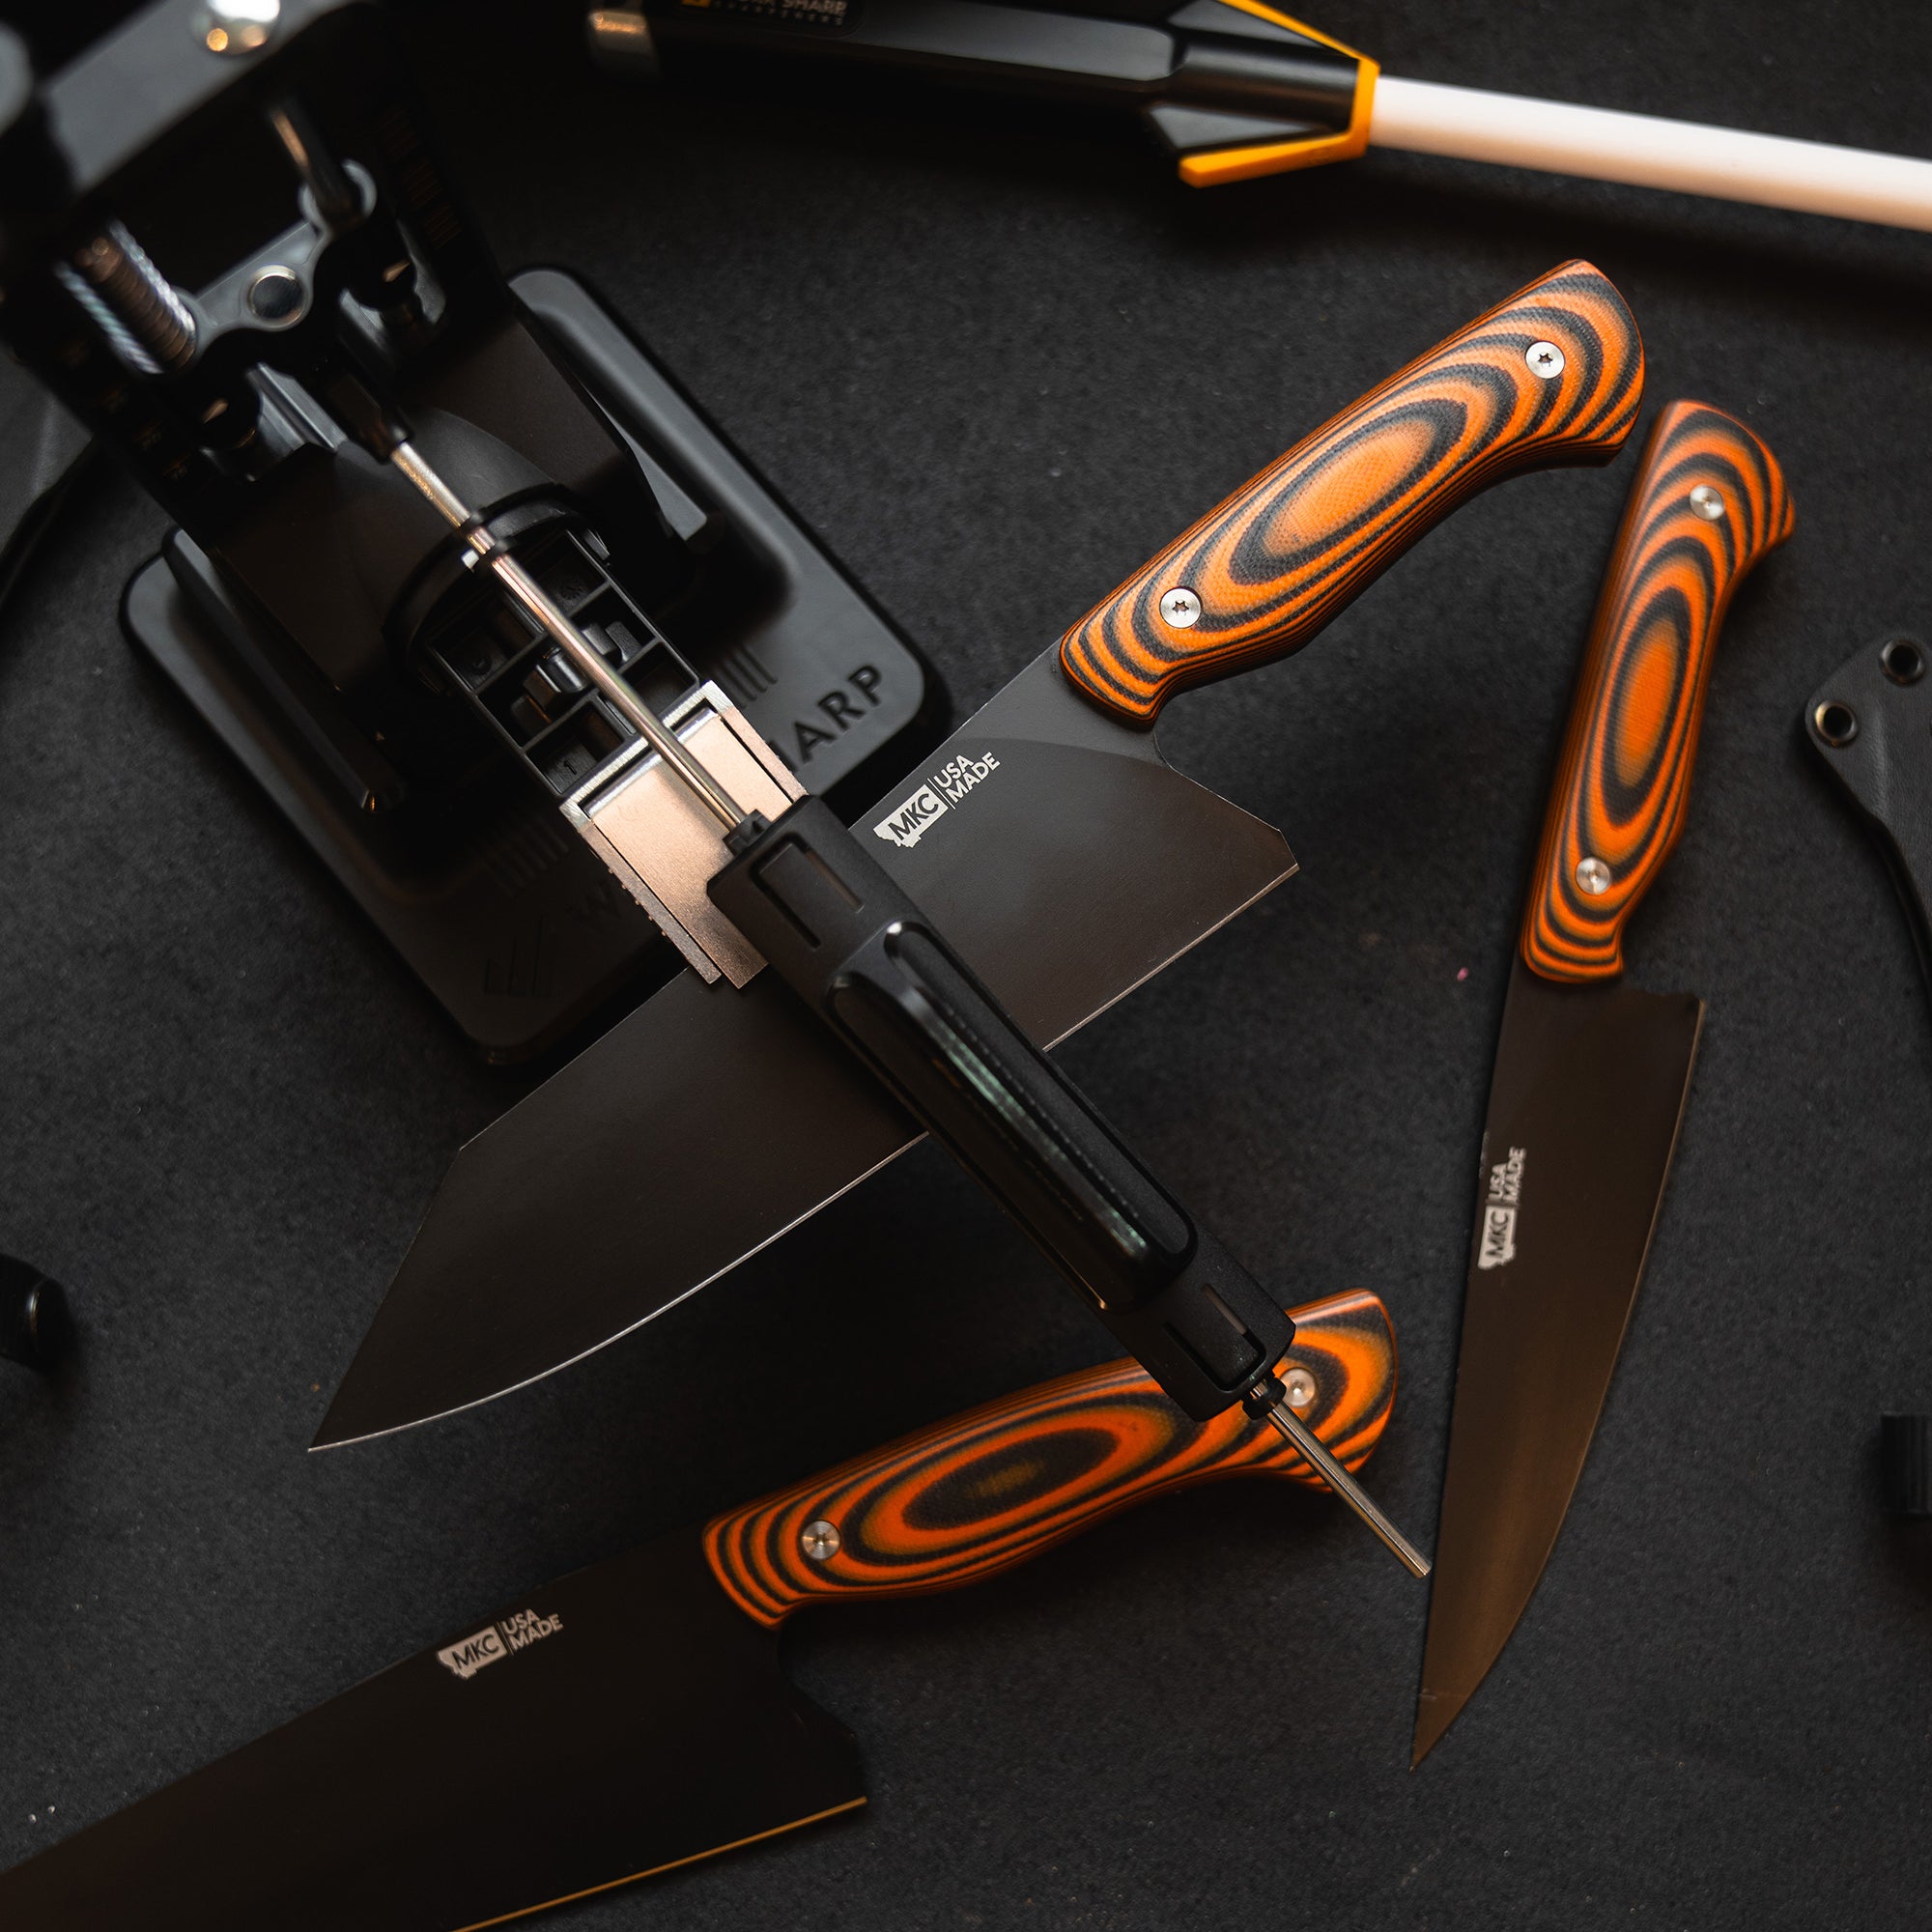 Work Sharp Precision Adjust Elite Knife Sharpener